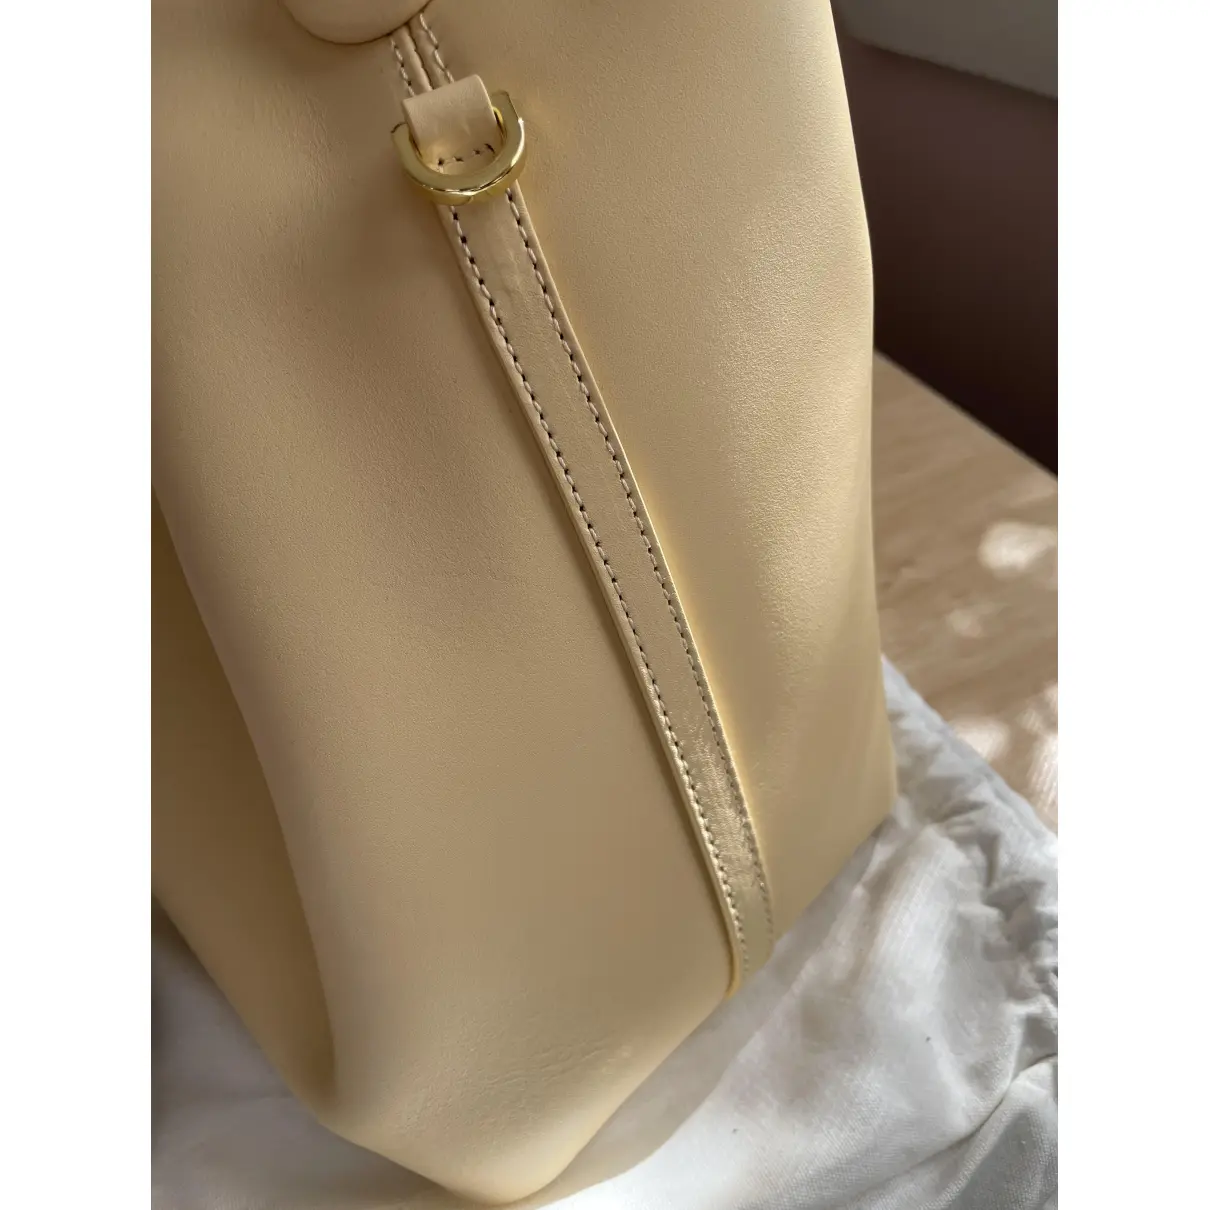 Buy Elleme Leather handbag online